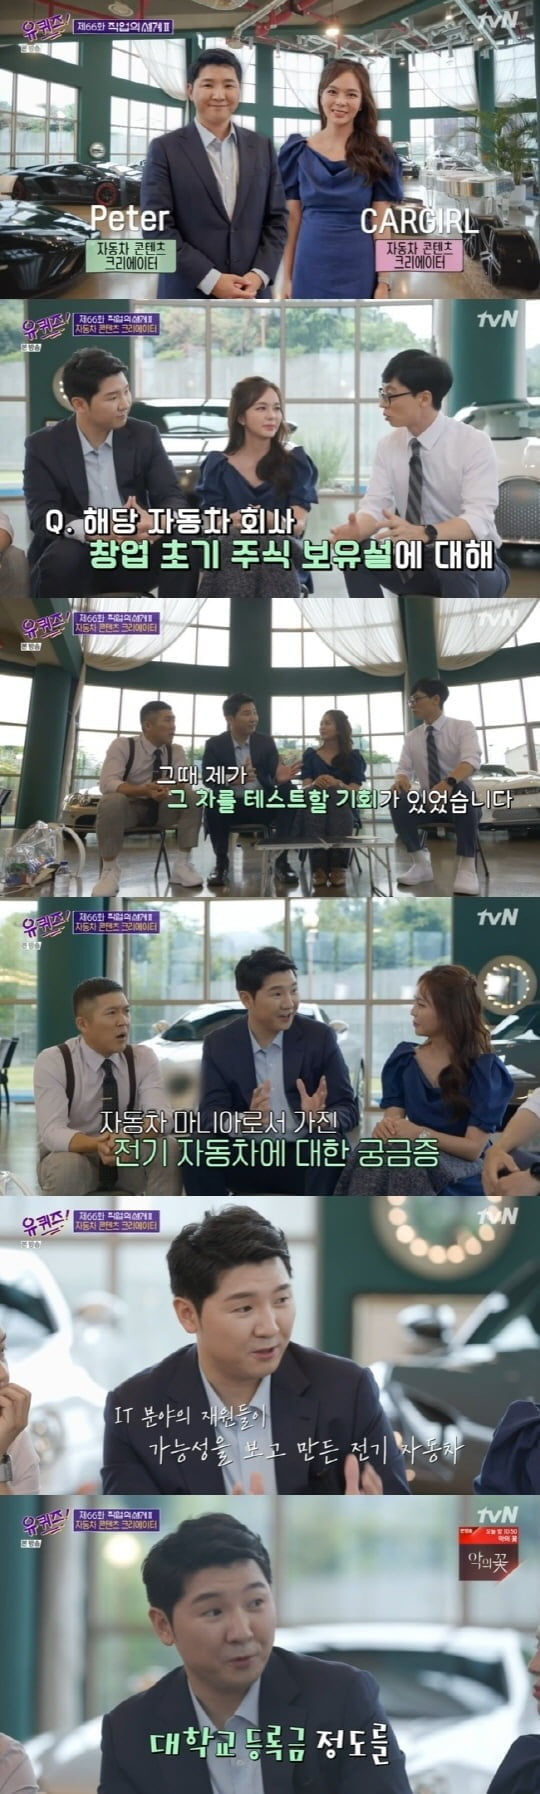 '유퀴즈'에 출연한 카걸과 피터 /사진=tvN 캡쳐 